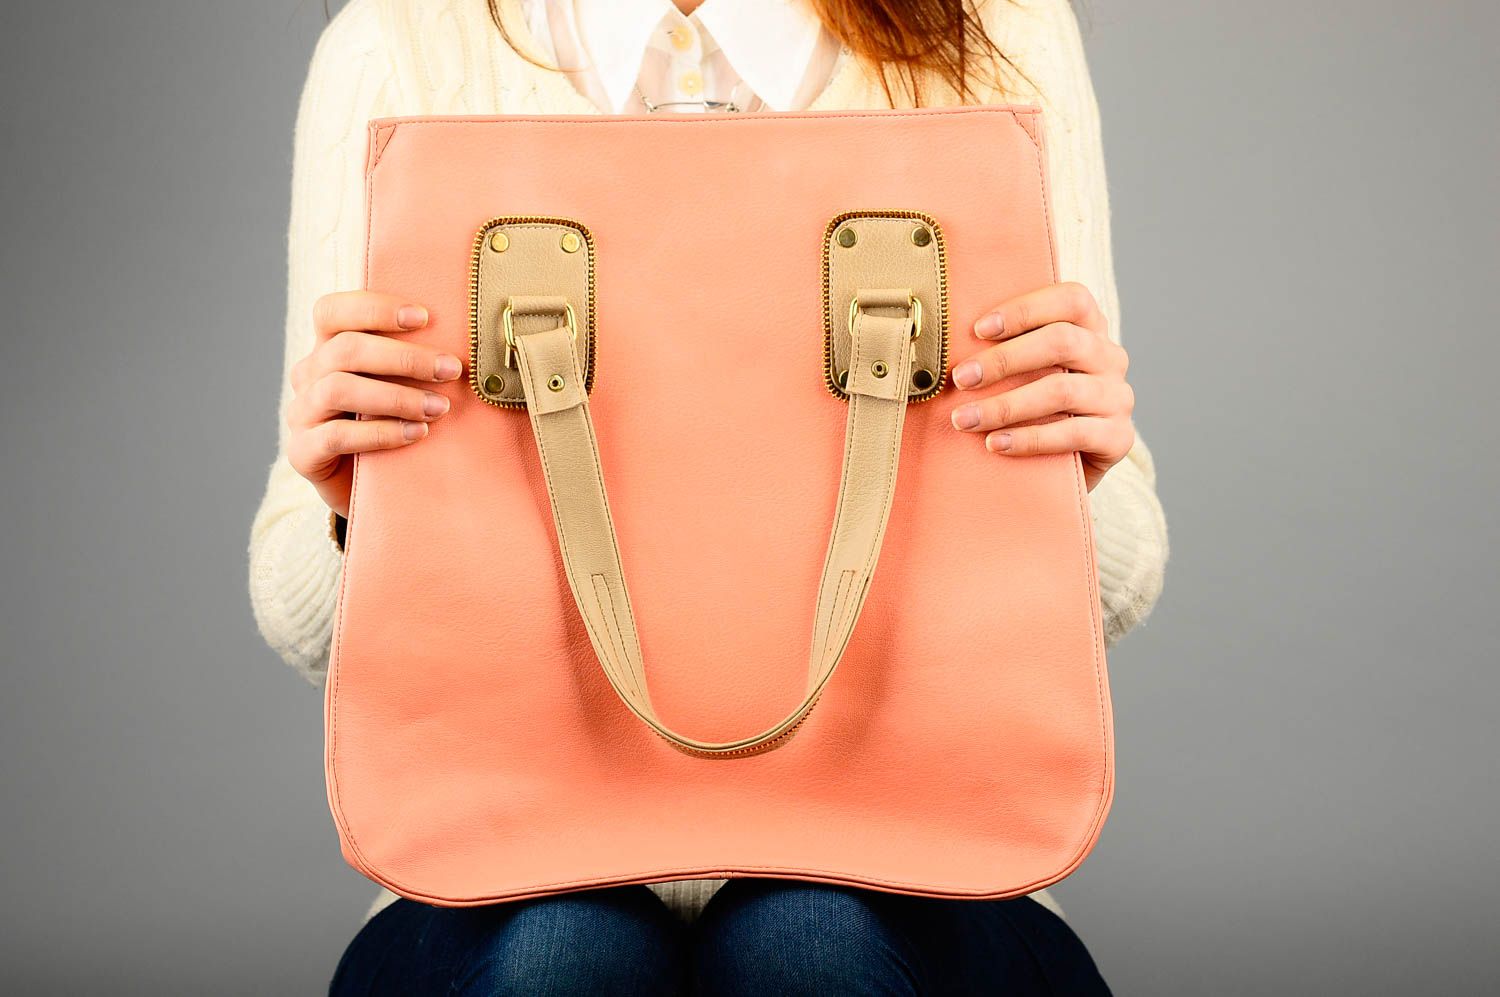 Сумка ручной работы сумка на плечо из кожзама женская сумка персиковая стильная фото 2